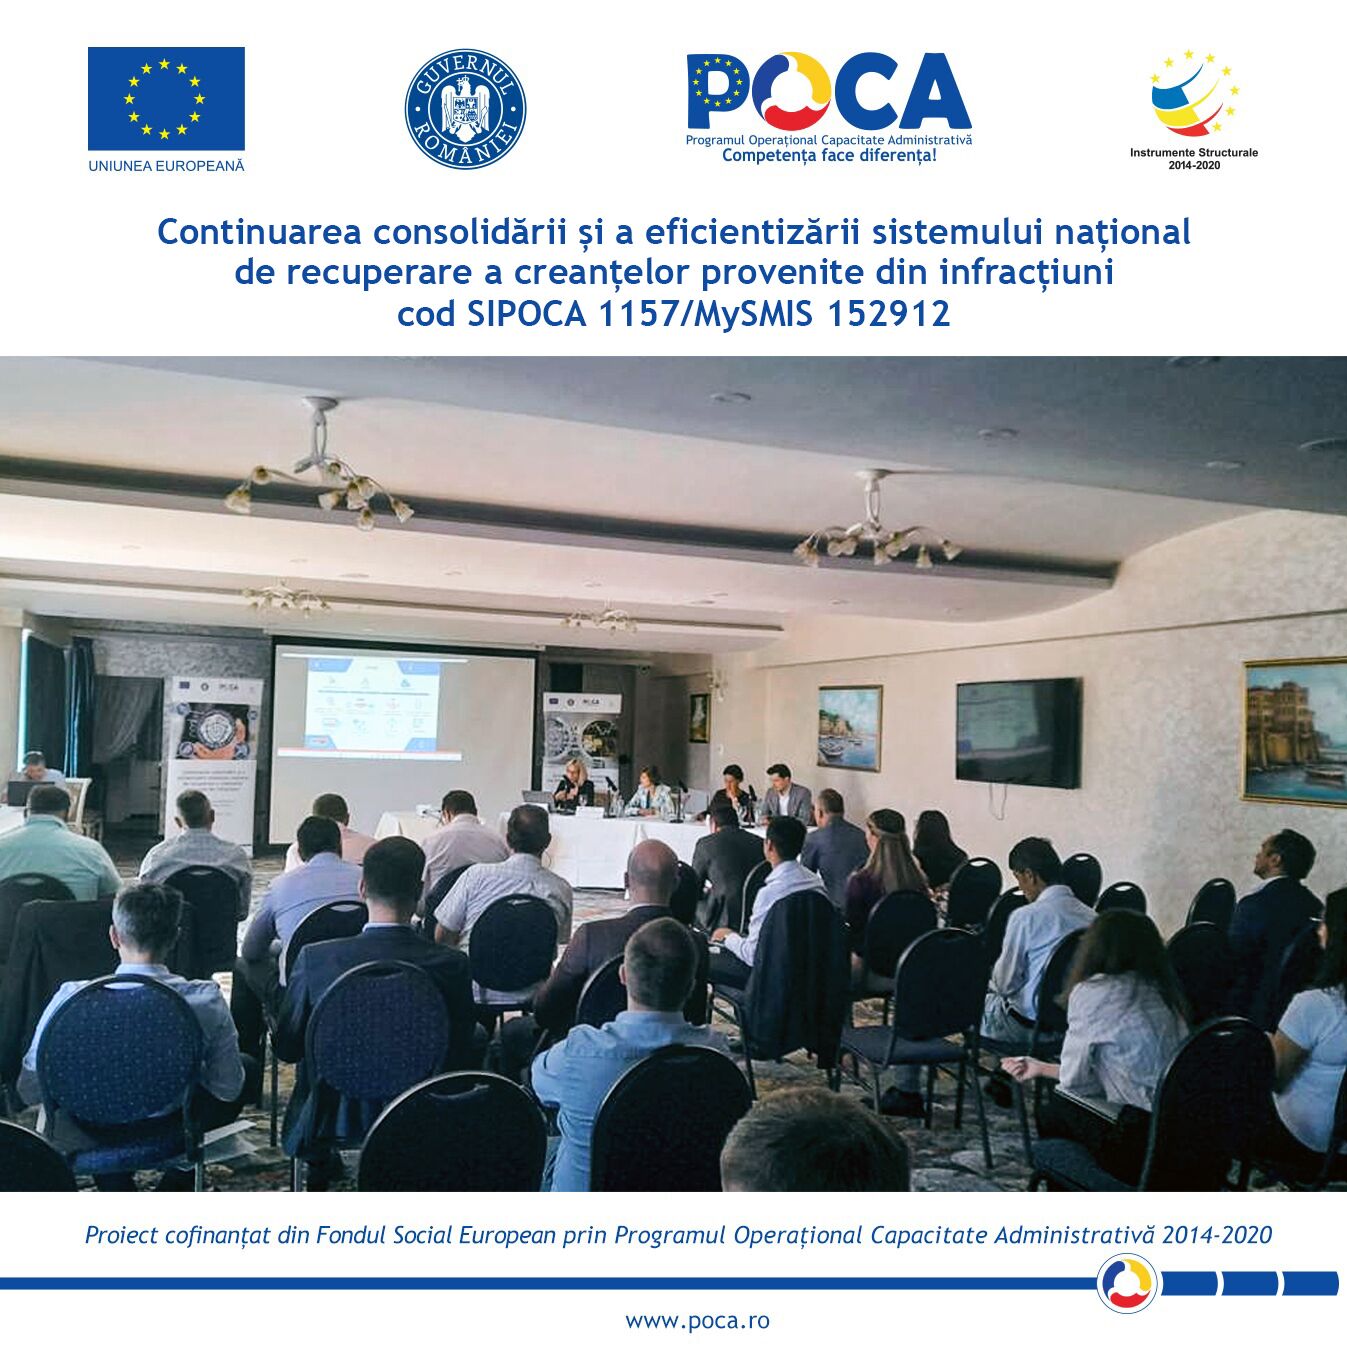 Conferința regională organizată la Constanța în cadrul proiectului „Continuarea consolidării și a eficientizării sistemului național de recuperare a creanțelor provenite din infracțiuni” cod SIPOCA 1157, cod MySMIS 152912